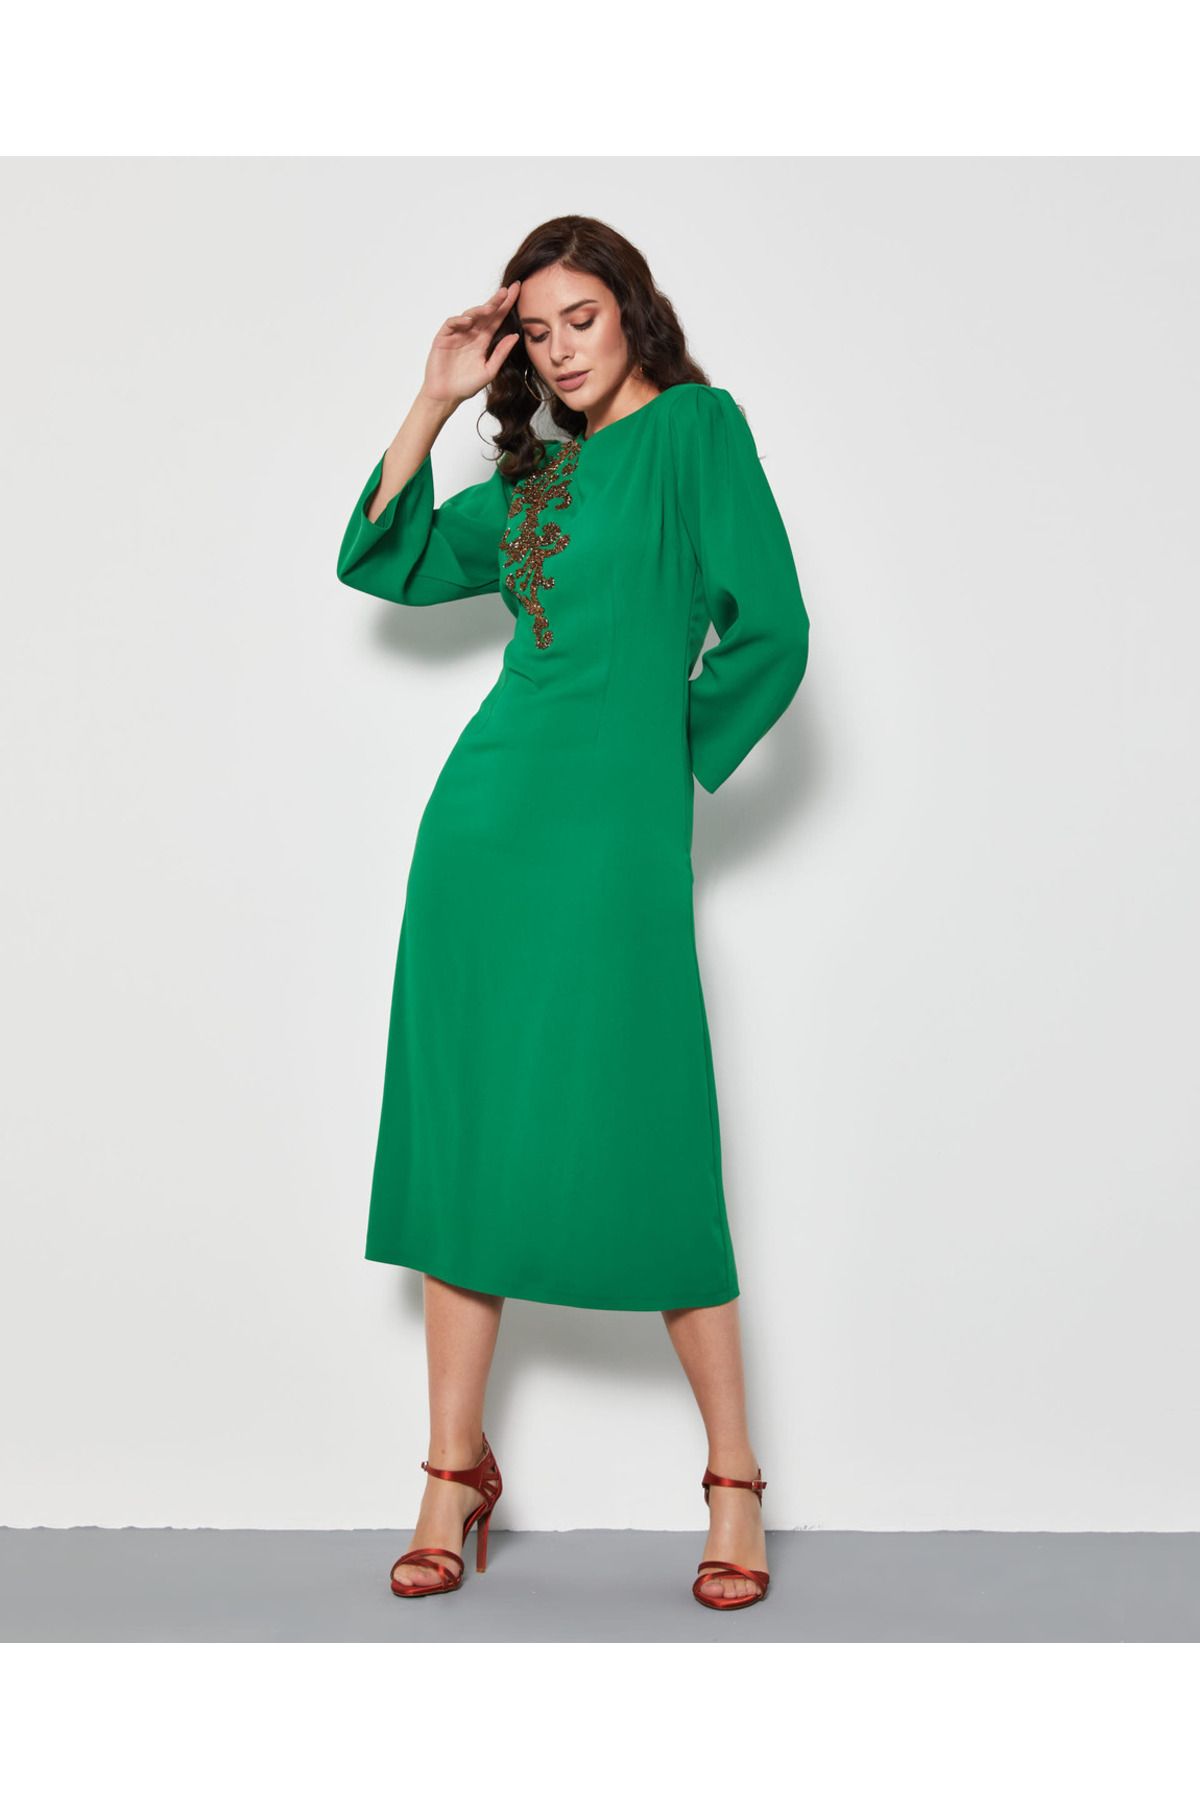 Serpil Serpil Kadın Yeşil Elbise 37084